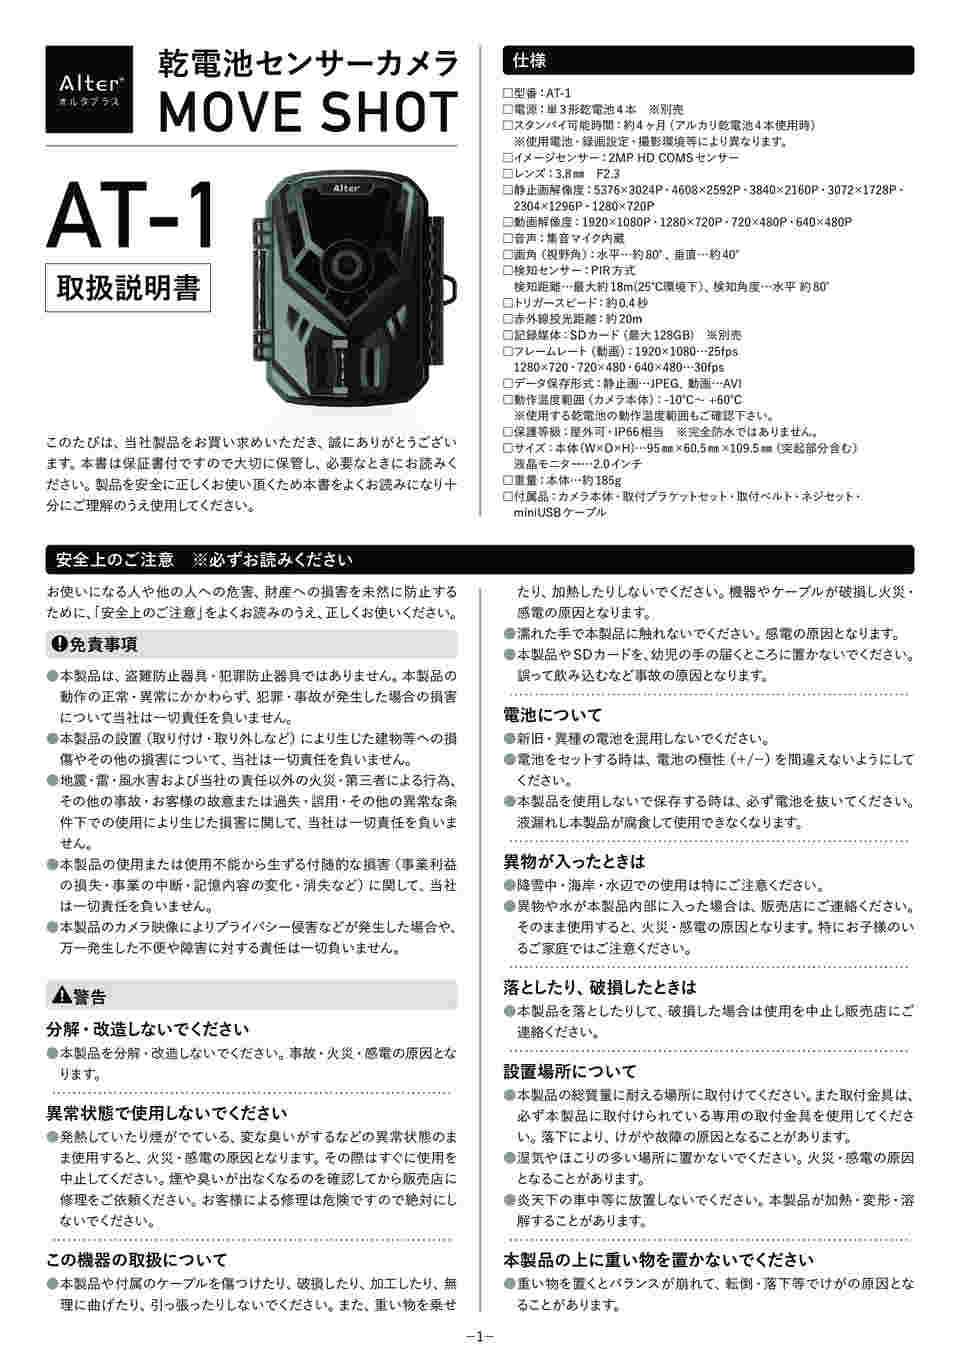 64-9111-93 乾電池式SD録画防犯センサーカメラ MOVE SHOT AT-1 【AXEL